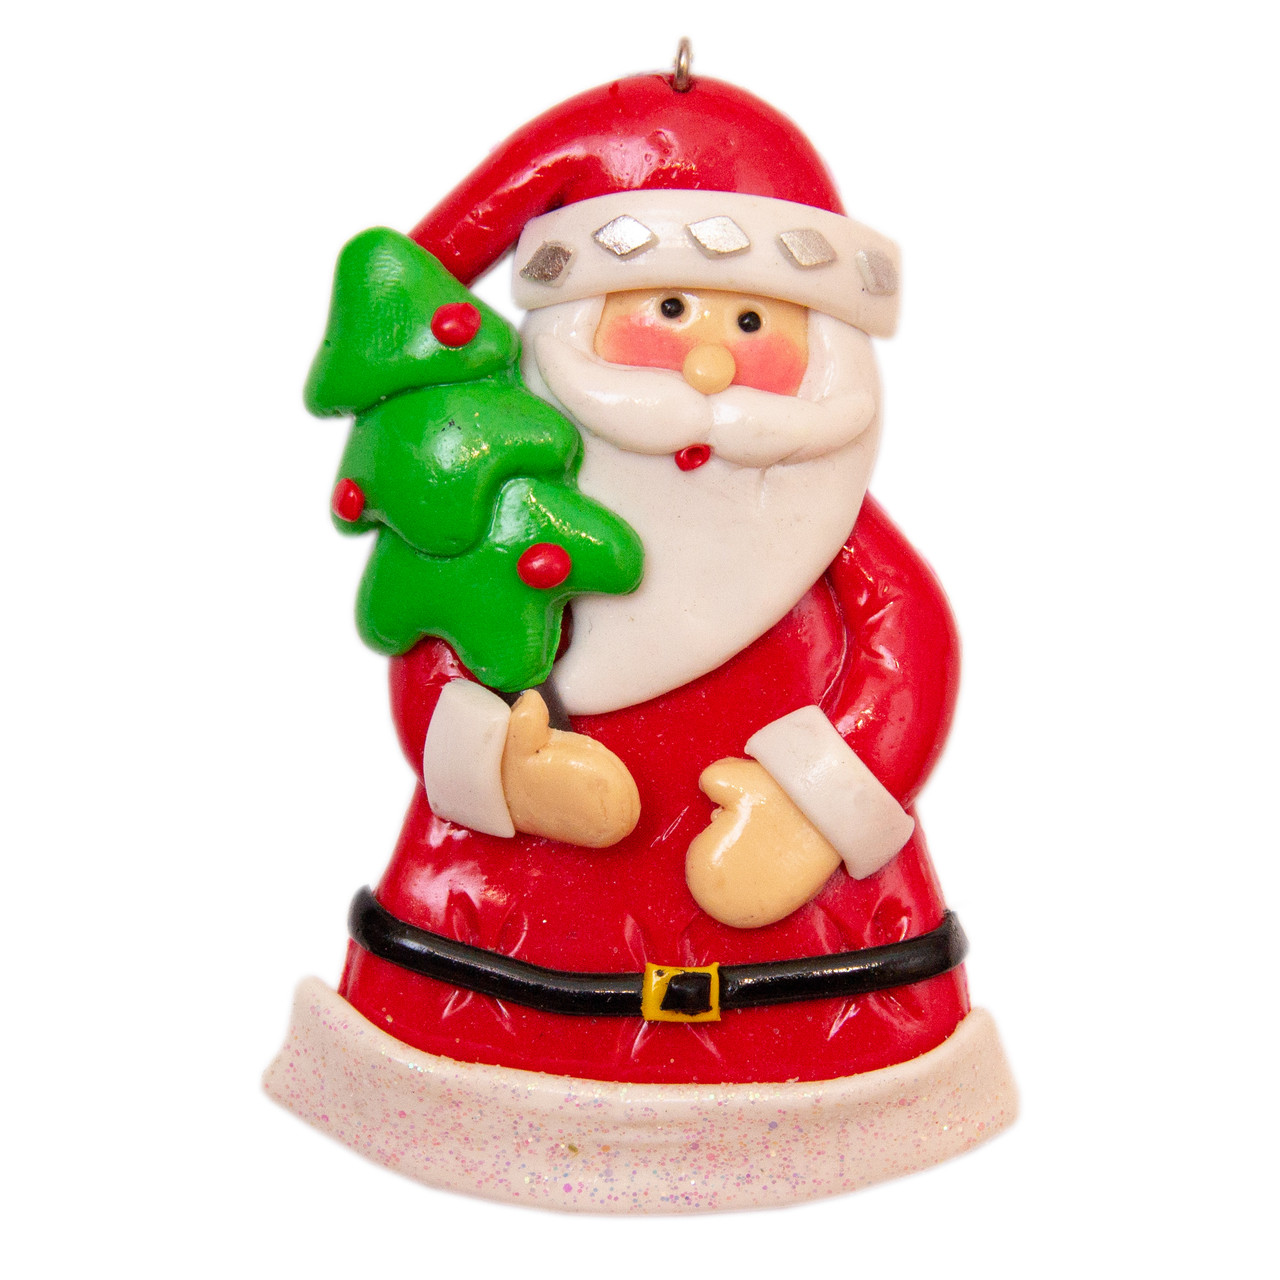 Новорічна ялинкова іграшка - фігурка Дід Мороз з ялинкою, 10 см, червоний, пластик, кераміка (000371-3)